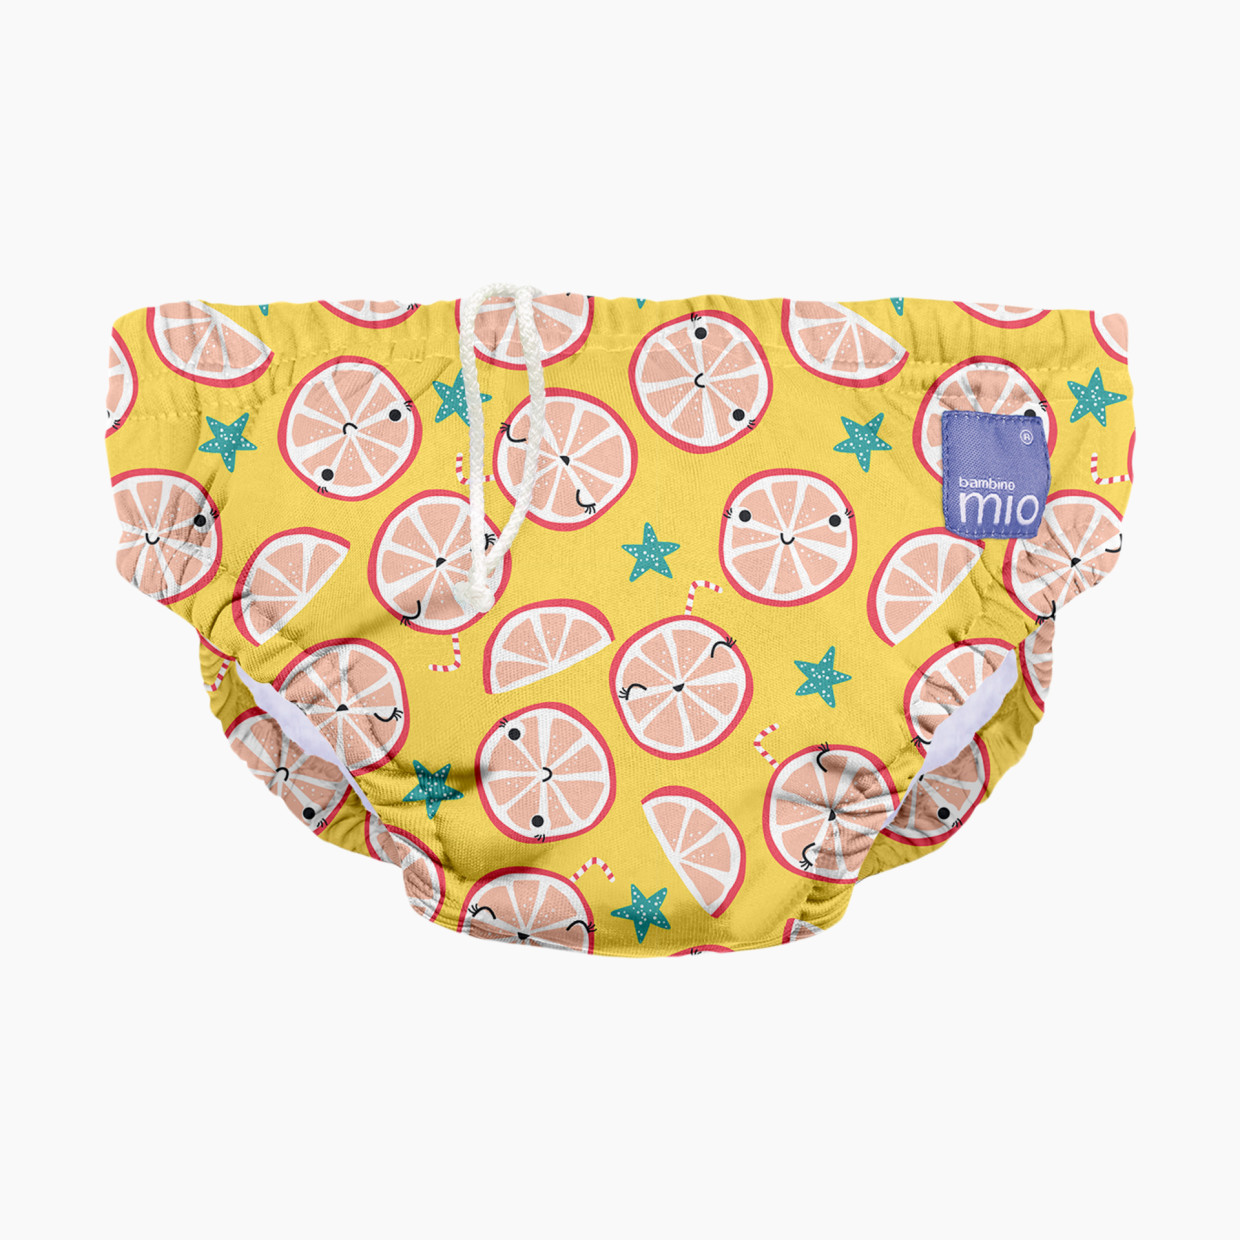 Bambino Mio Reusable Swim Diaper - Cool Citrus, Medium (6-12 Months).